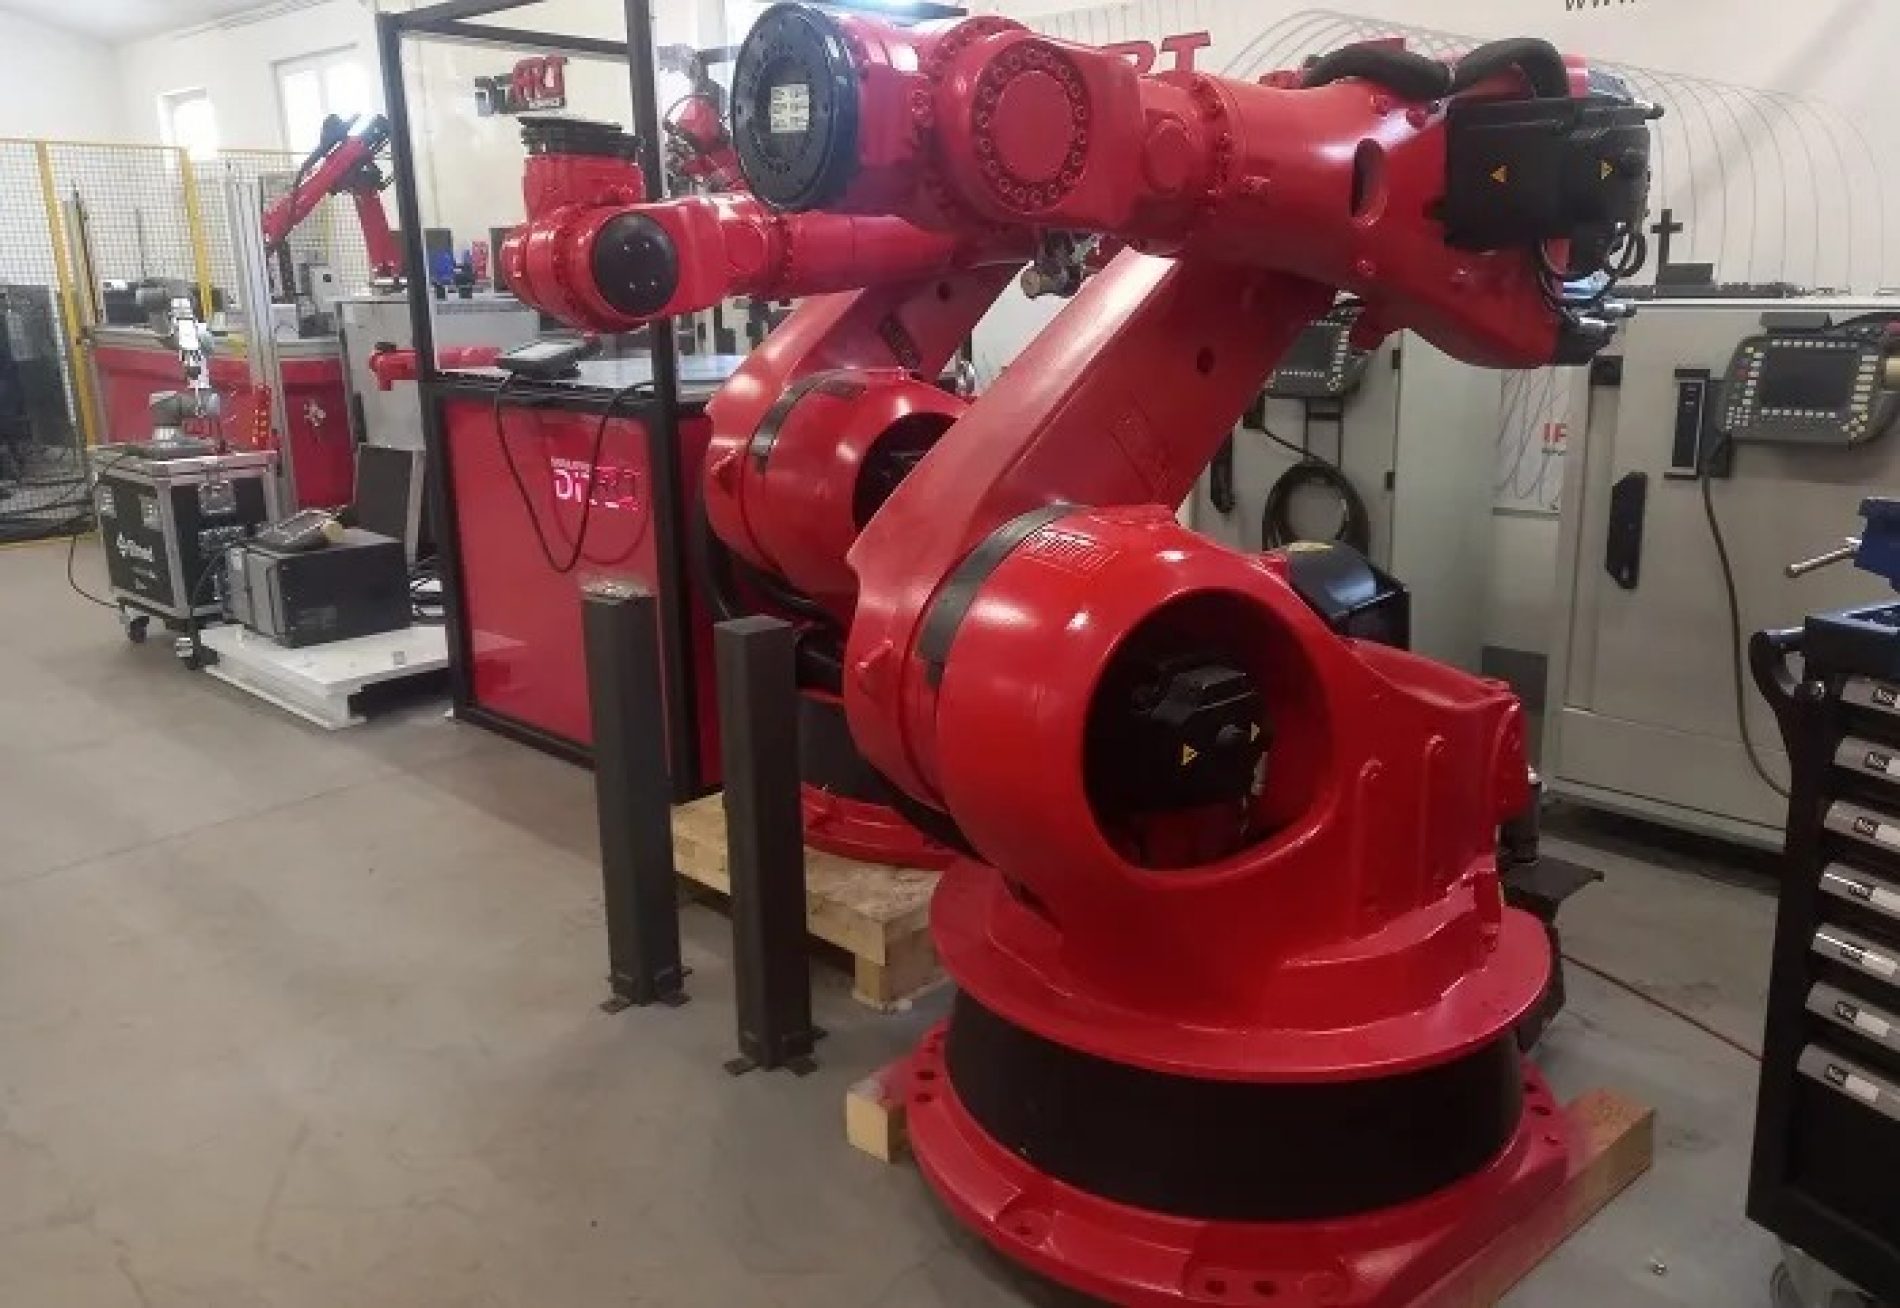 Sarajevska firma proizvela robota: On je dokaz šta sve možemo